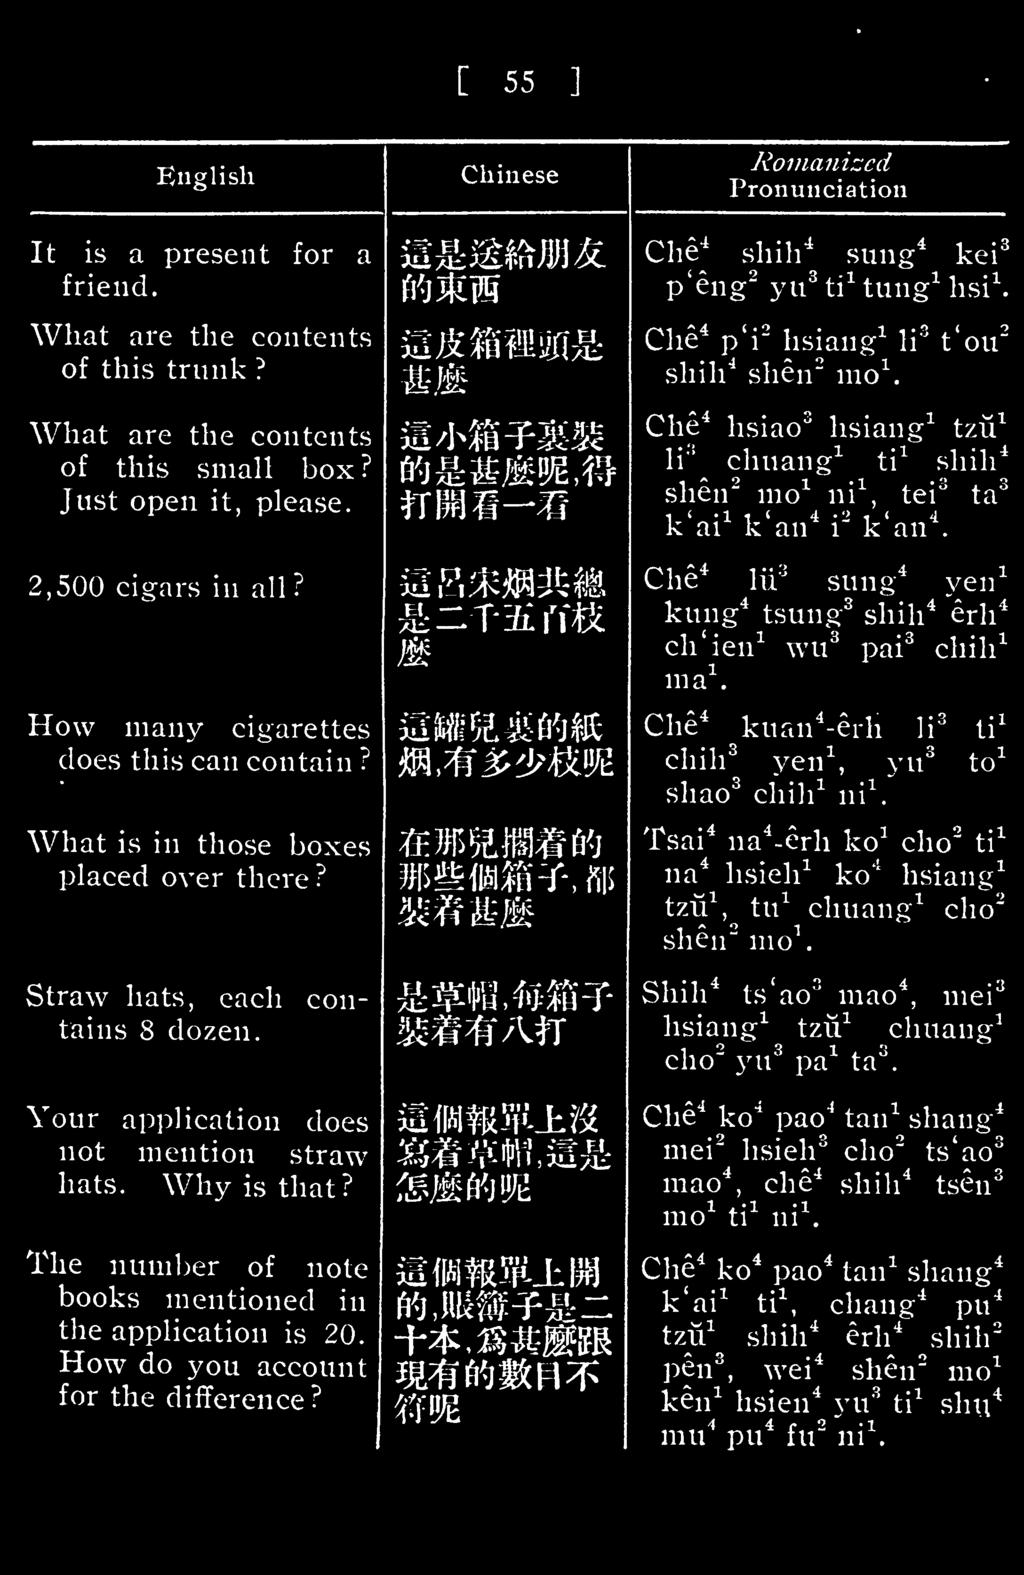 Chinese Romanized Pronunciation Che 4 shih 4 sung 4 kei 3 p'eng 2 yu 3 ti 1 tung 1 hsi 1. Che 4 p'i- hsiang 1 li* t'ou 2 shih 4 shen" mo 1. Che 4 hsiao 3 hsiang 1 tzu 1 li" chuang 1 ti!